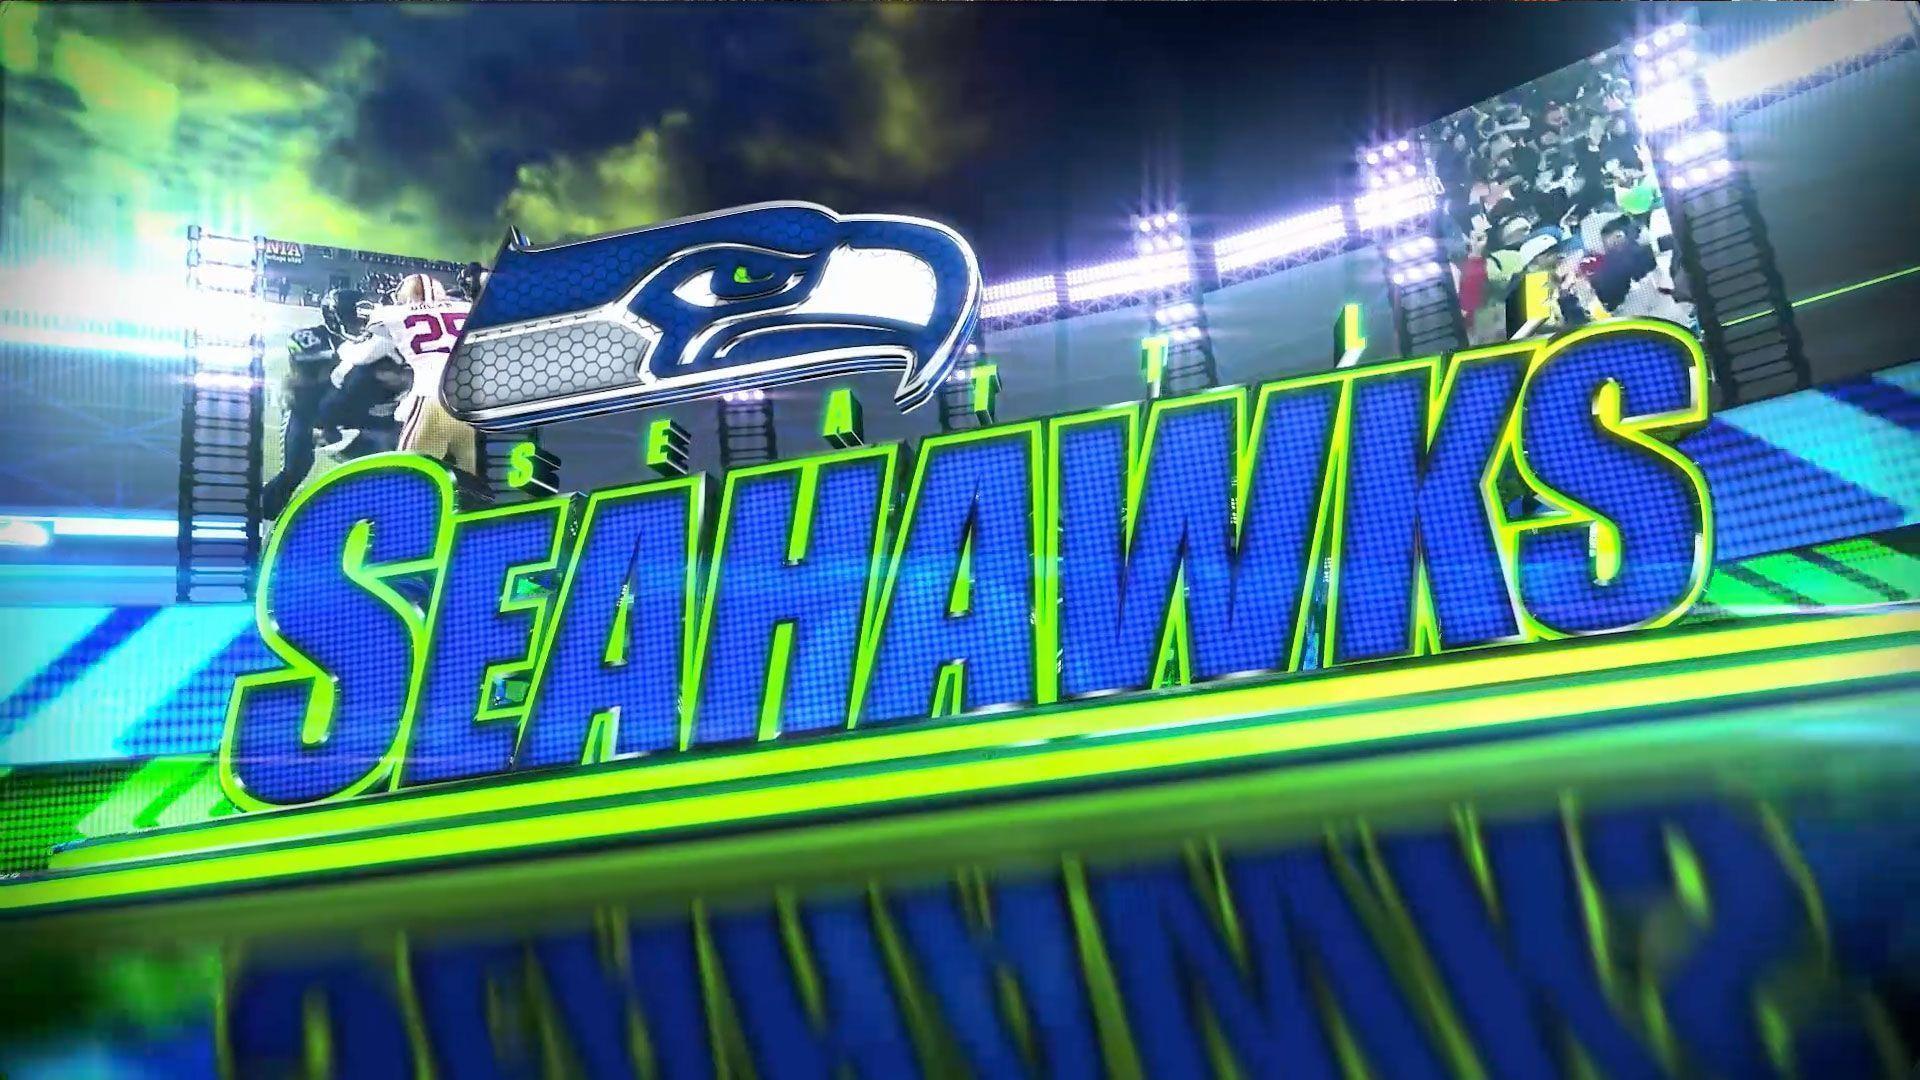 Surprising Seattle Seahawks Wallpaper 1280x960PX Seahawks